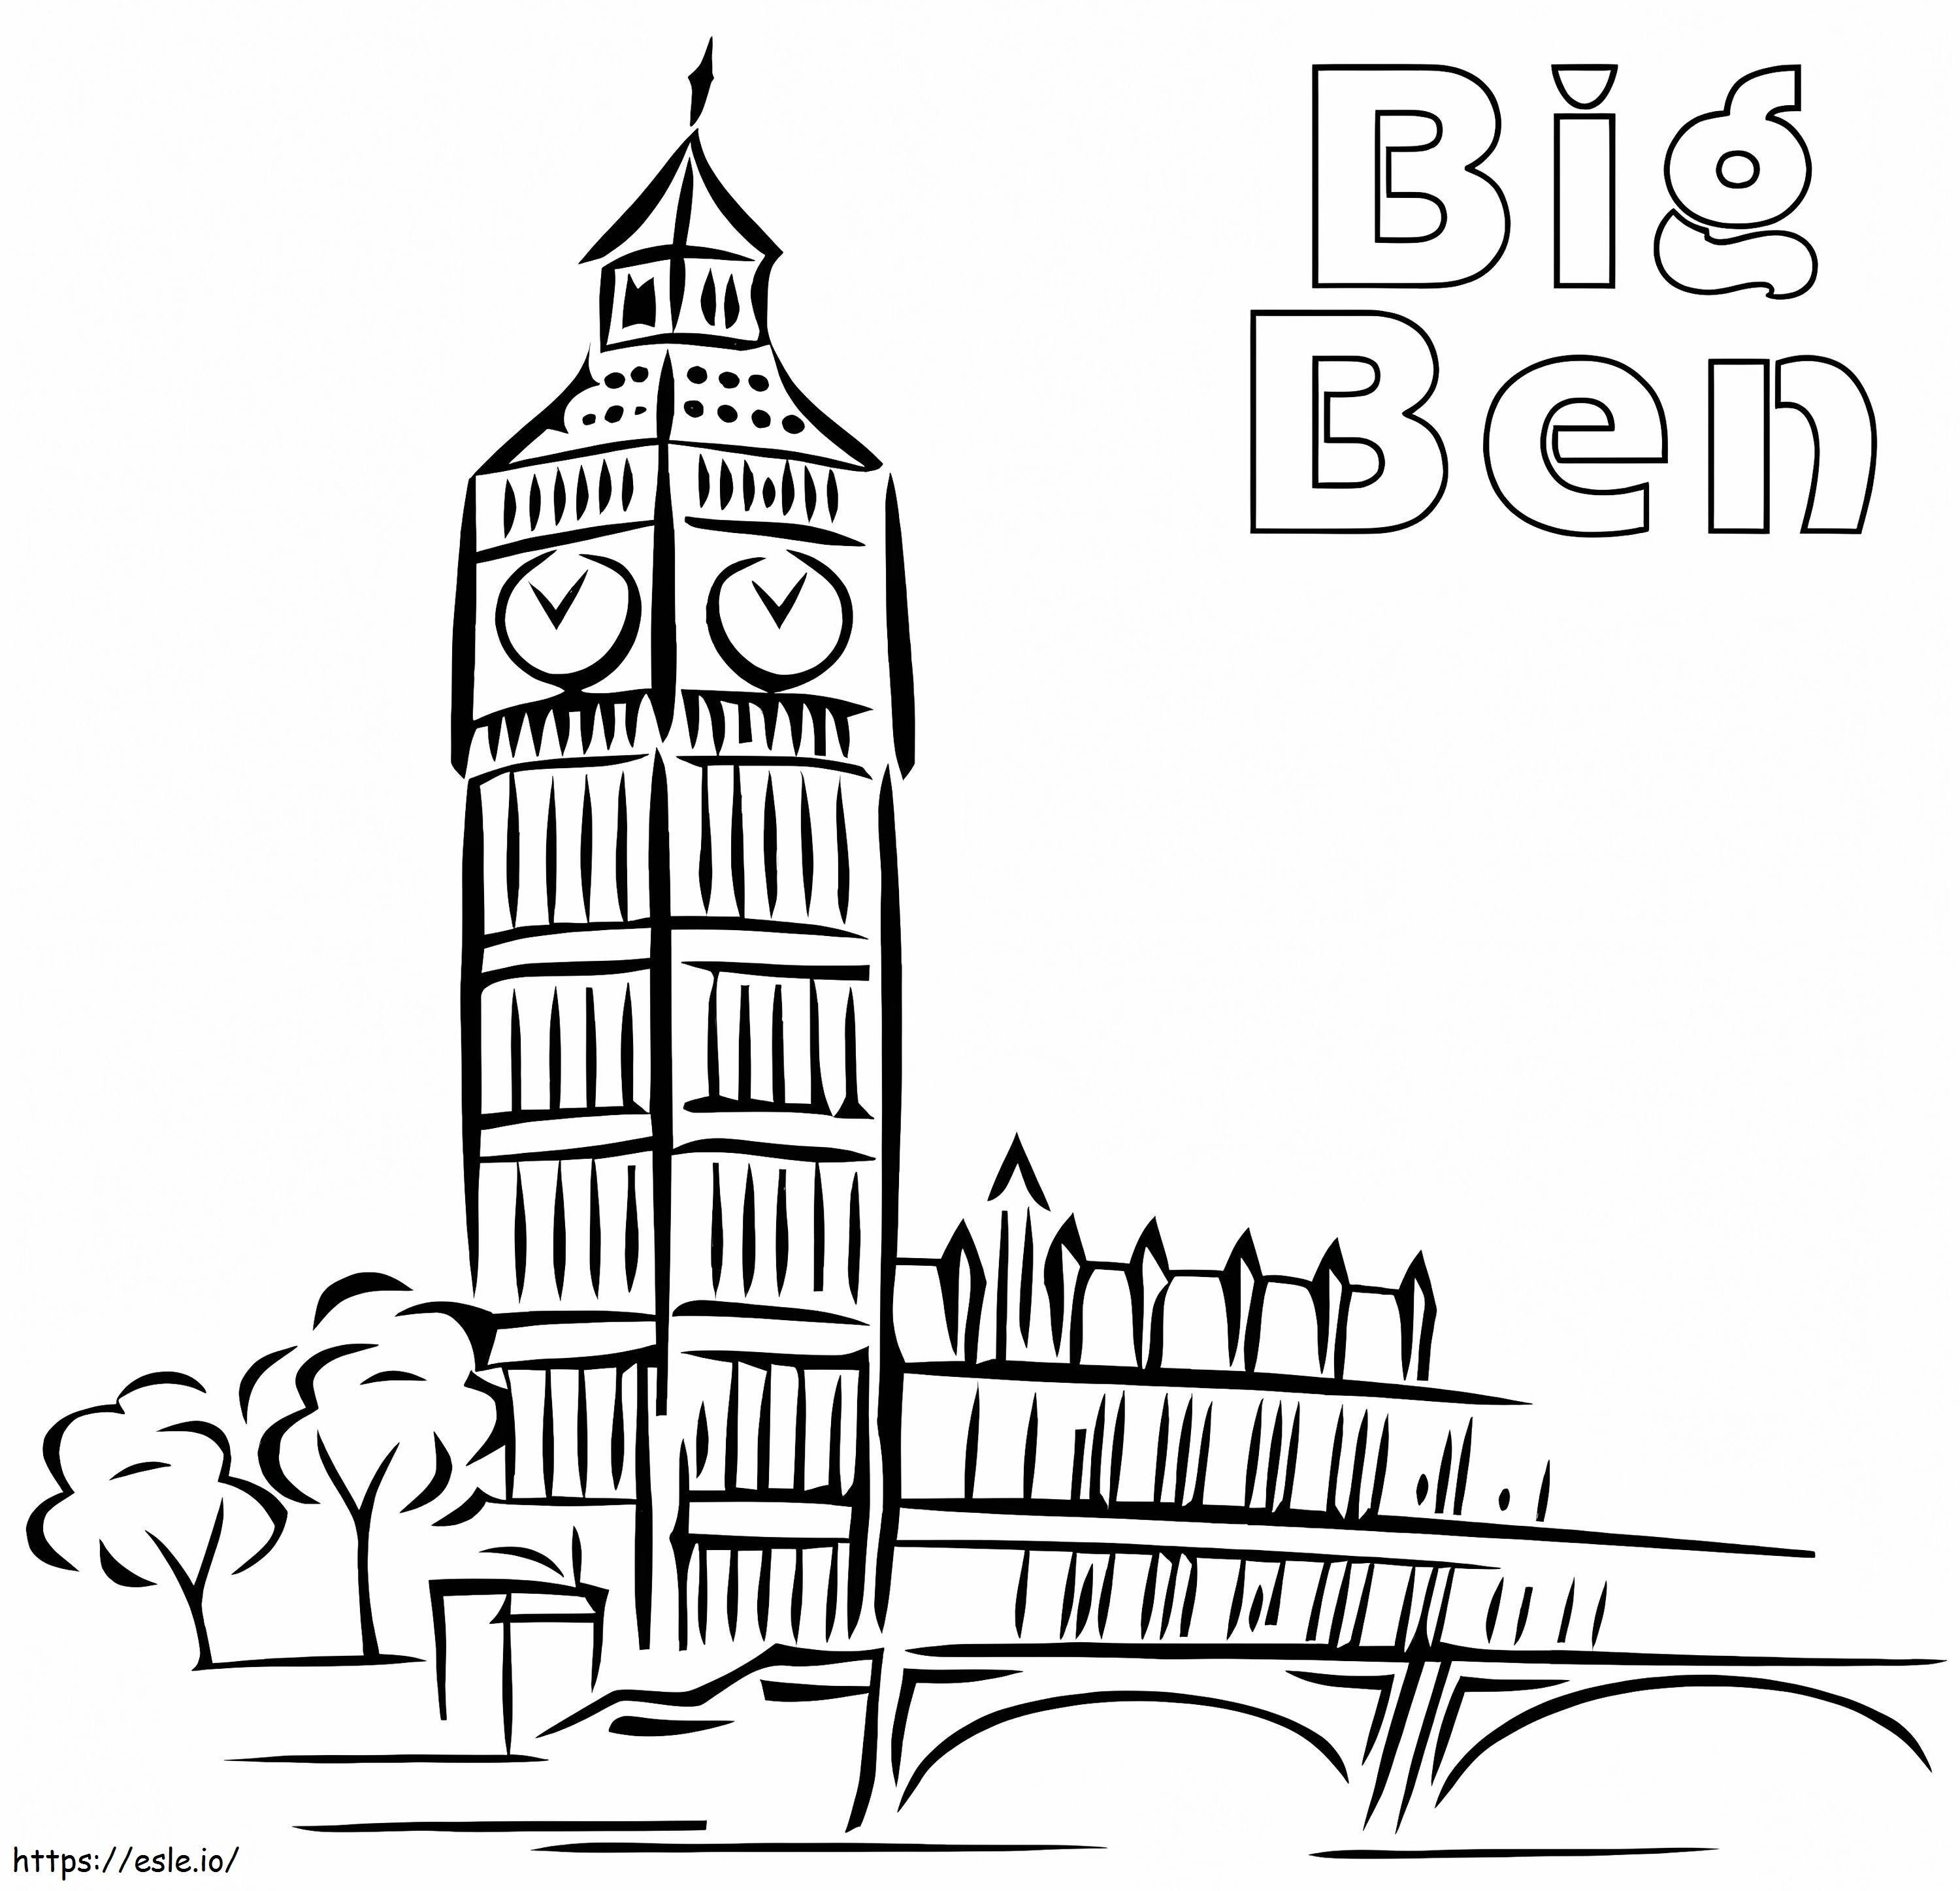 Big Ben 26 ausmalbilder